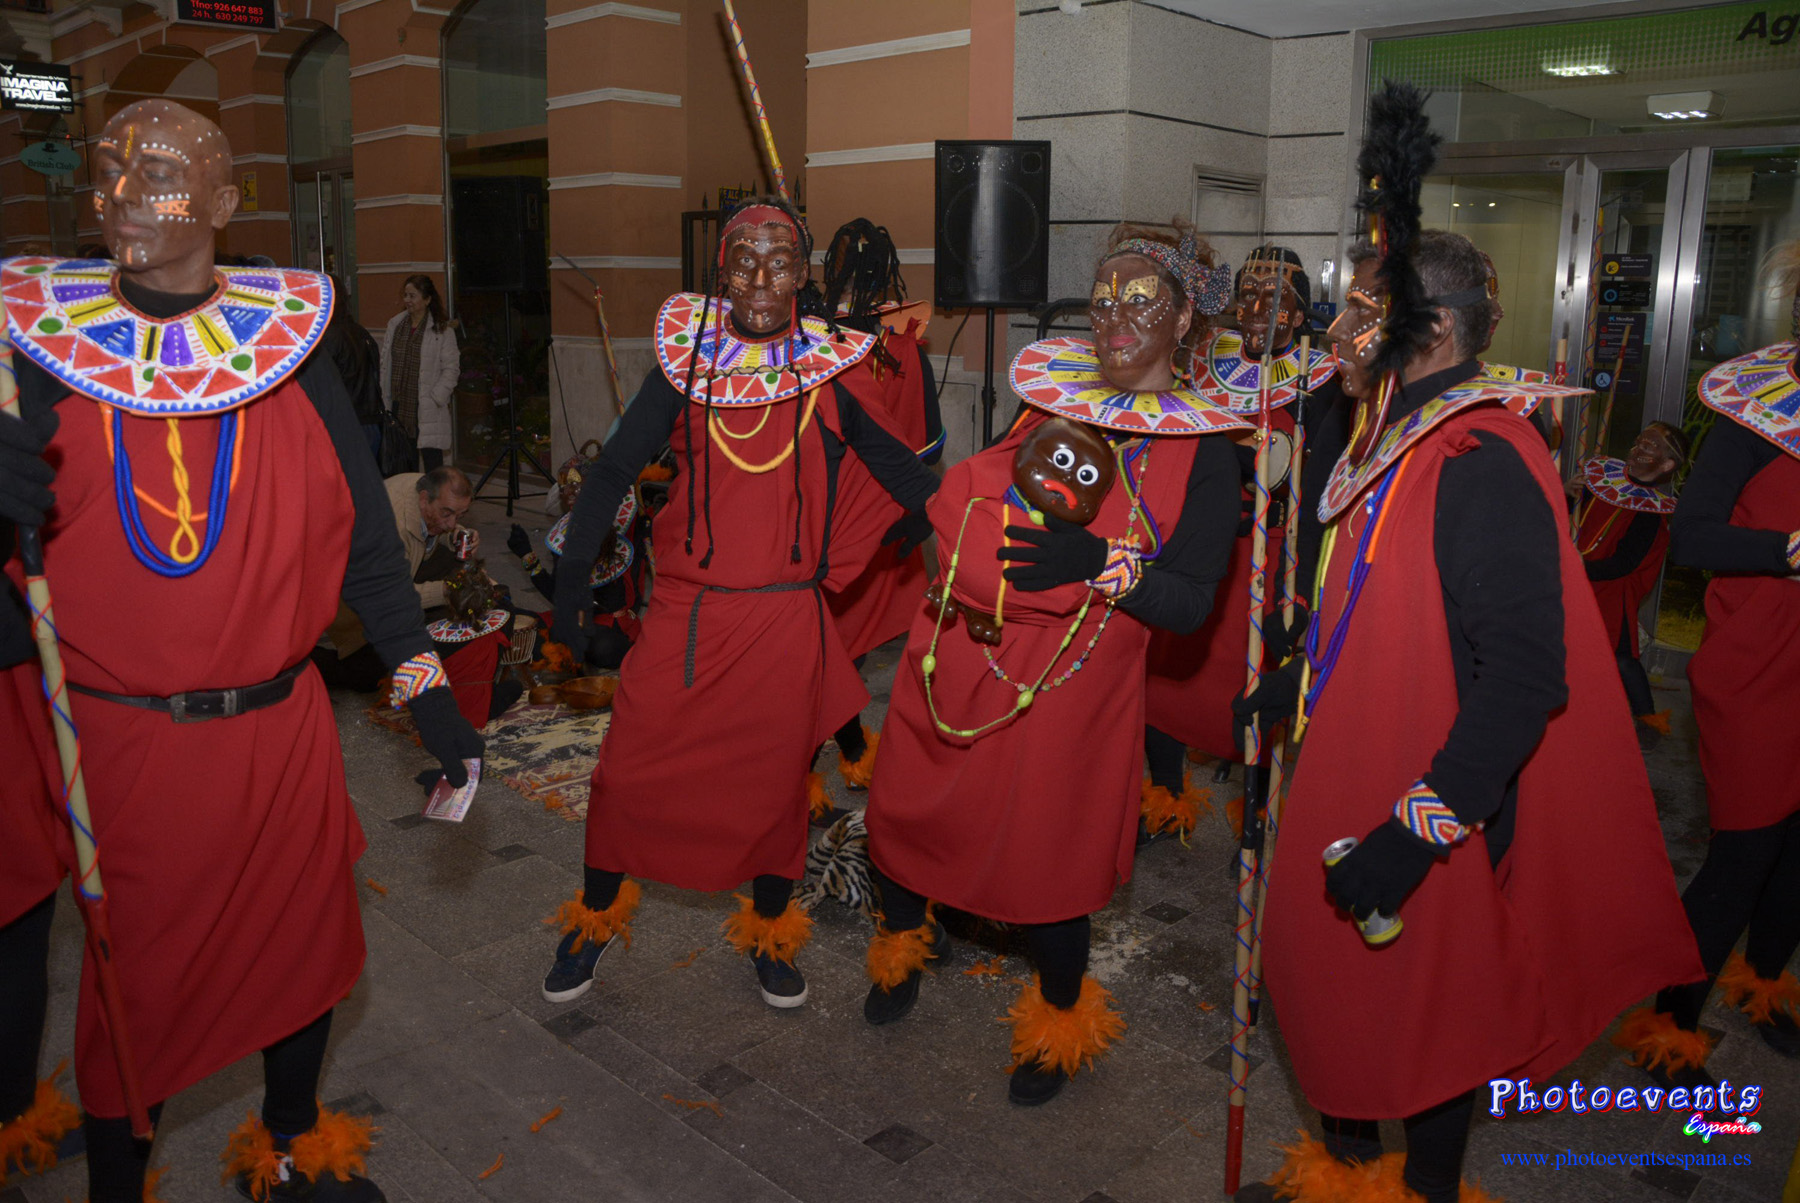 Concurso de máscaras en el Carnaval de Manzanares, Ciudad Real  